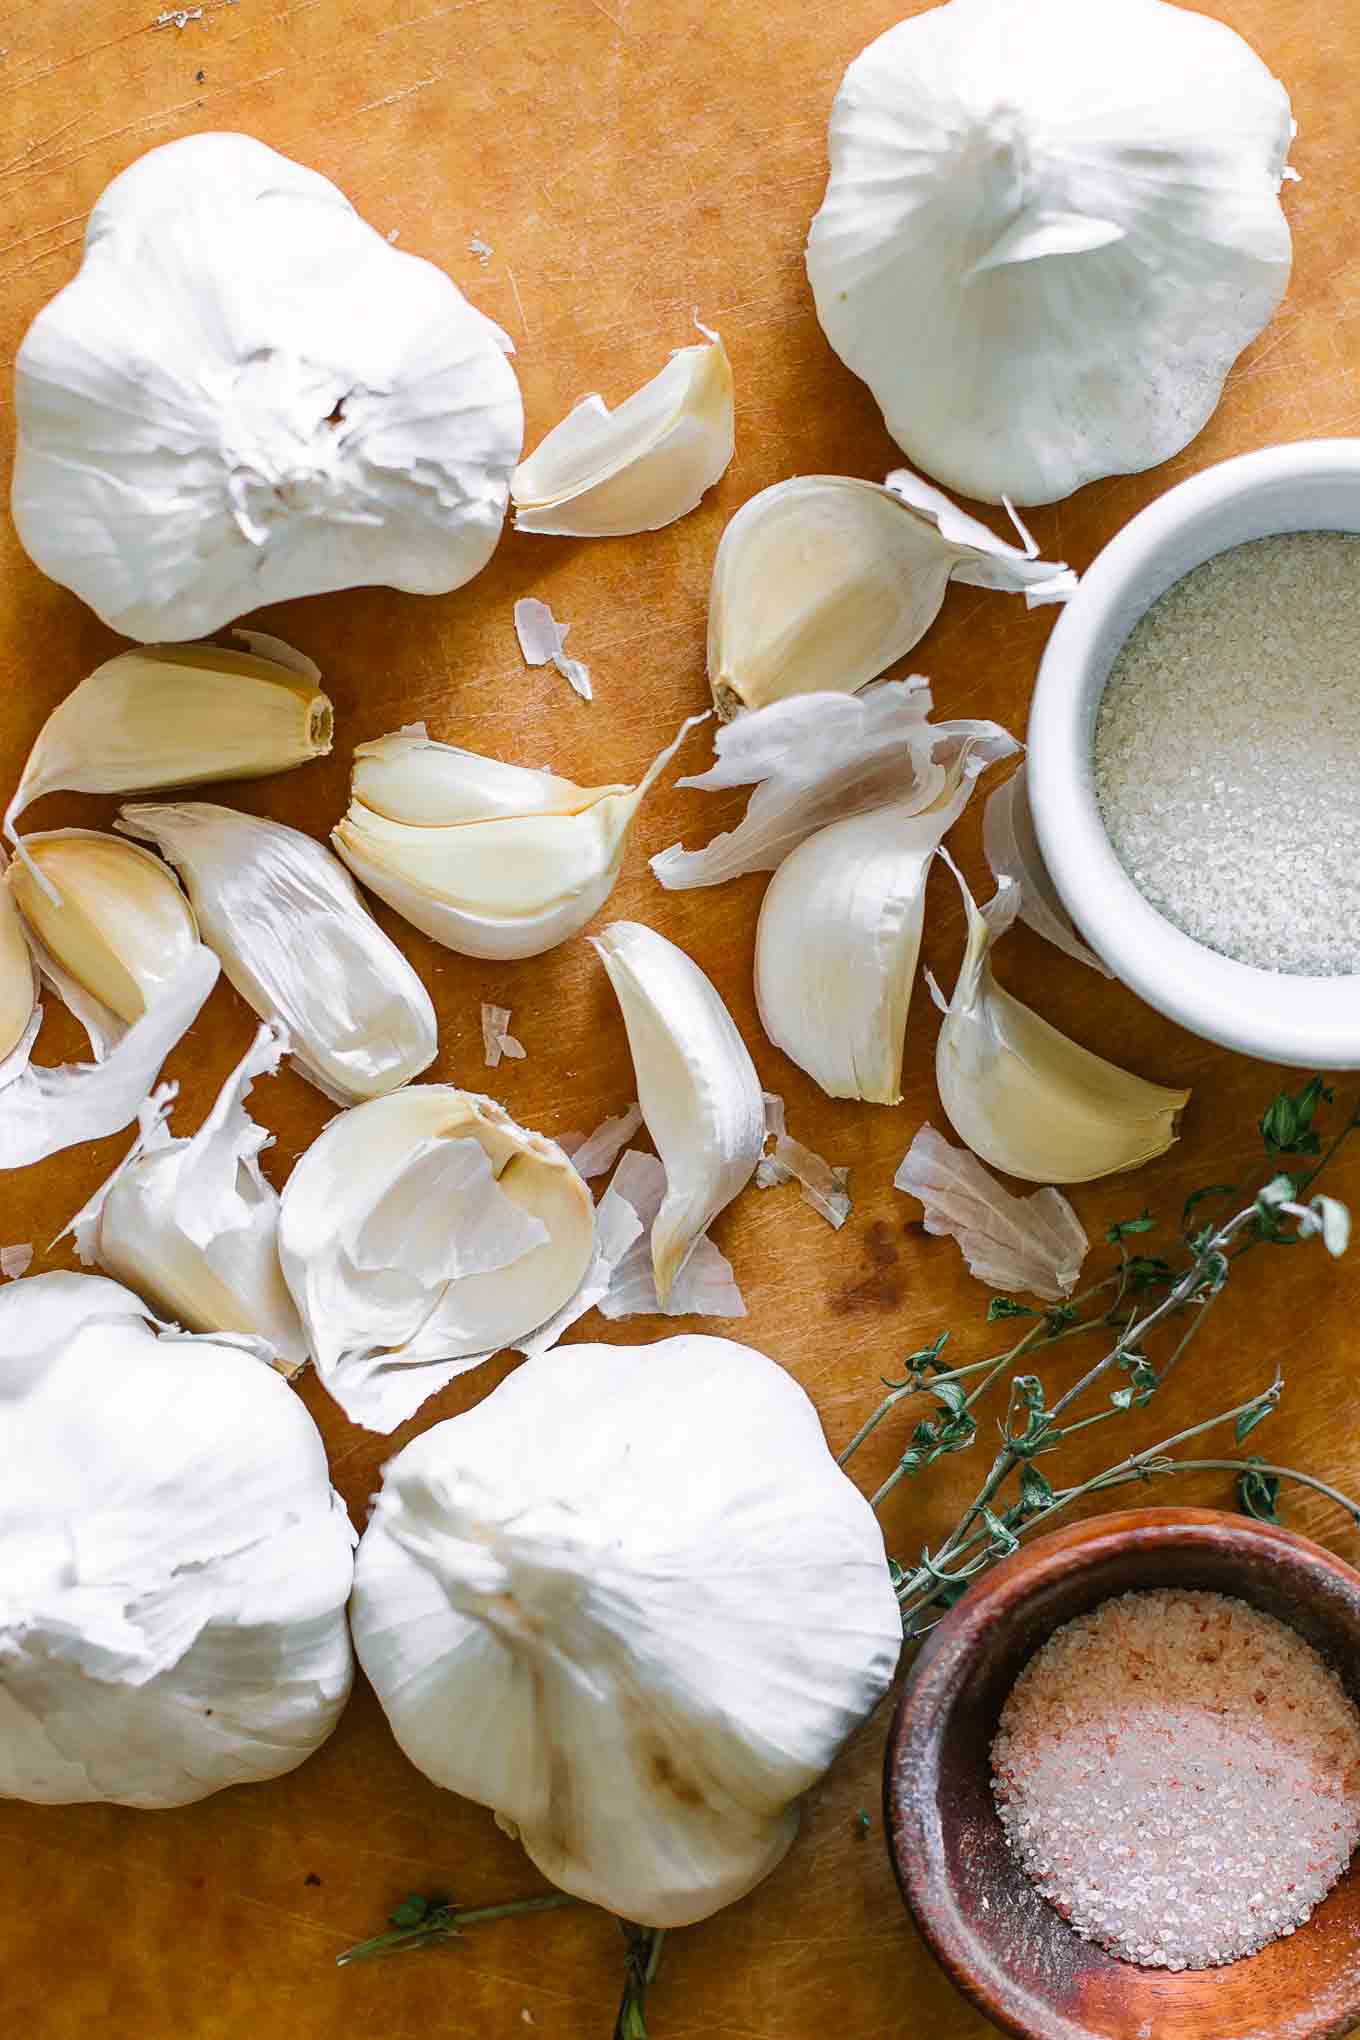 garlic cloves on a cutting board with sugar and salt bowls